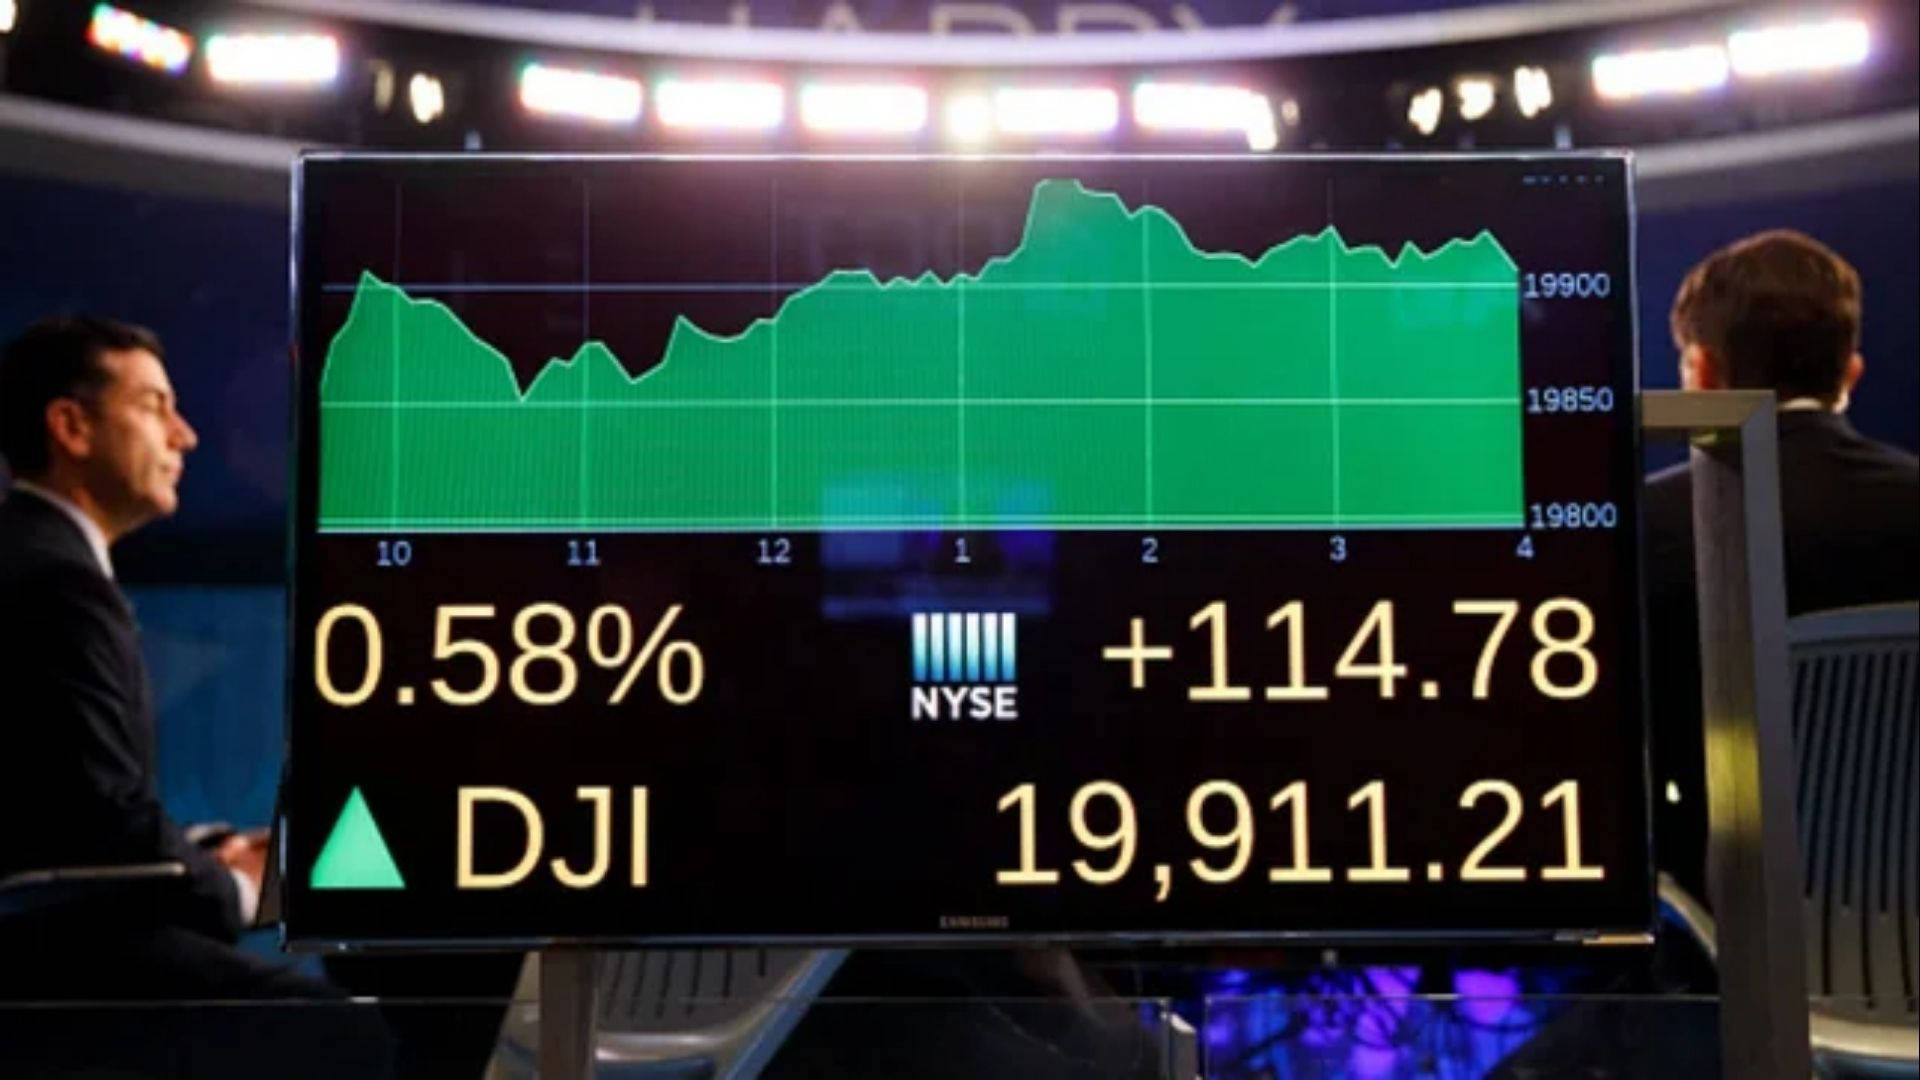 Dow Jones Index Onscreen Background